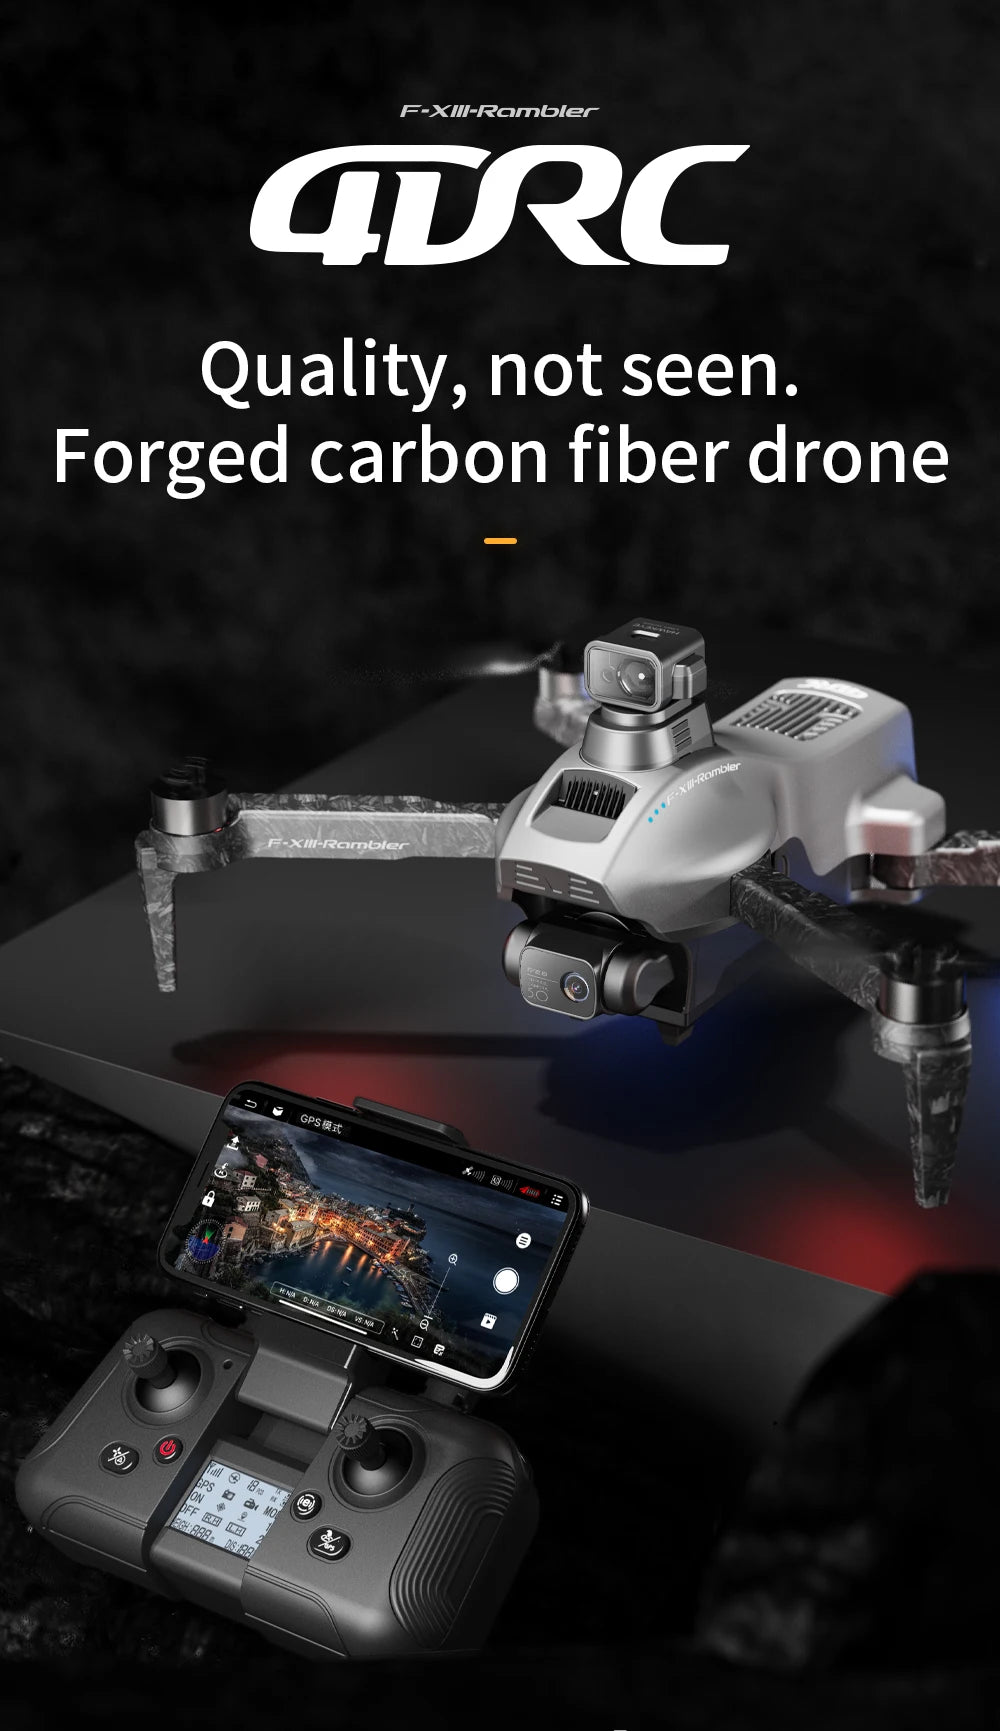 4DRC F13 - GPS Drone, F-XIII-Rambler @URC Quality,